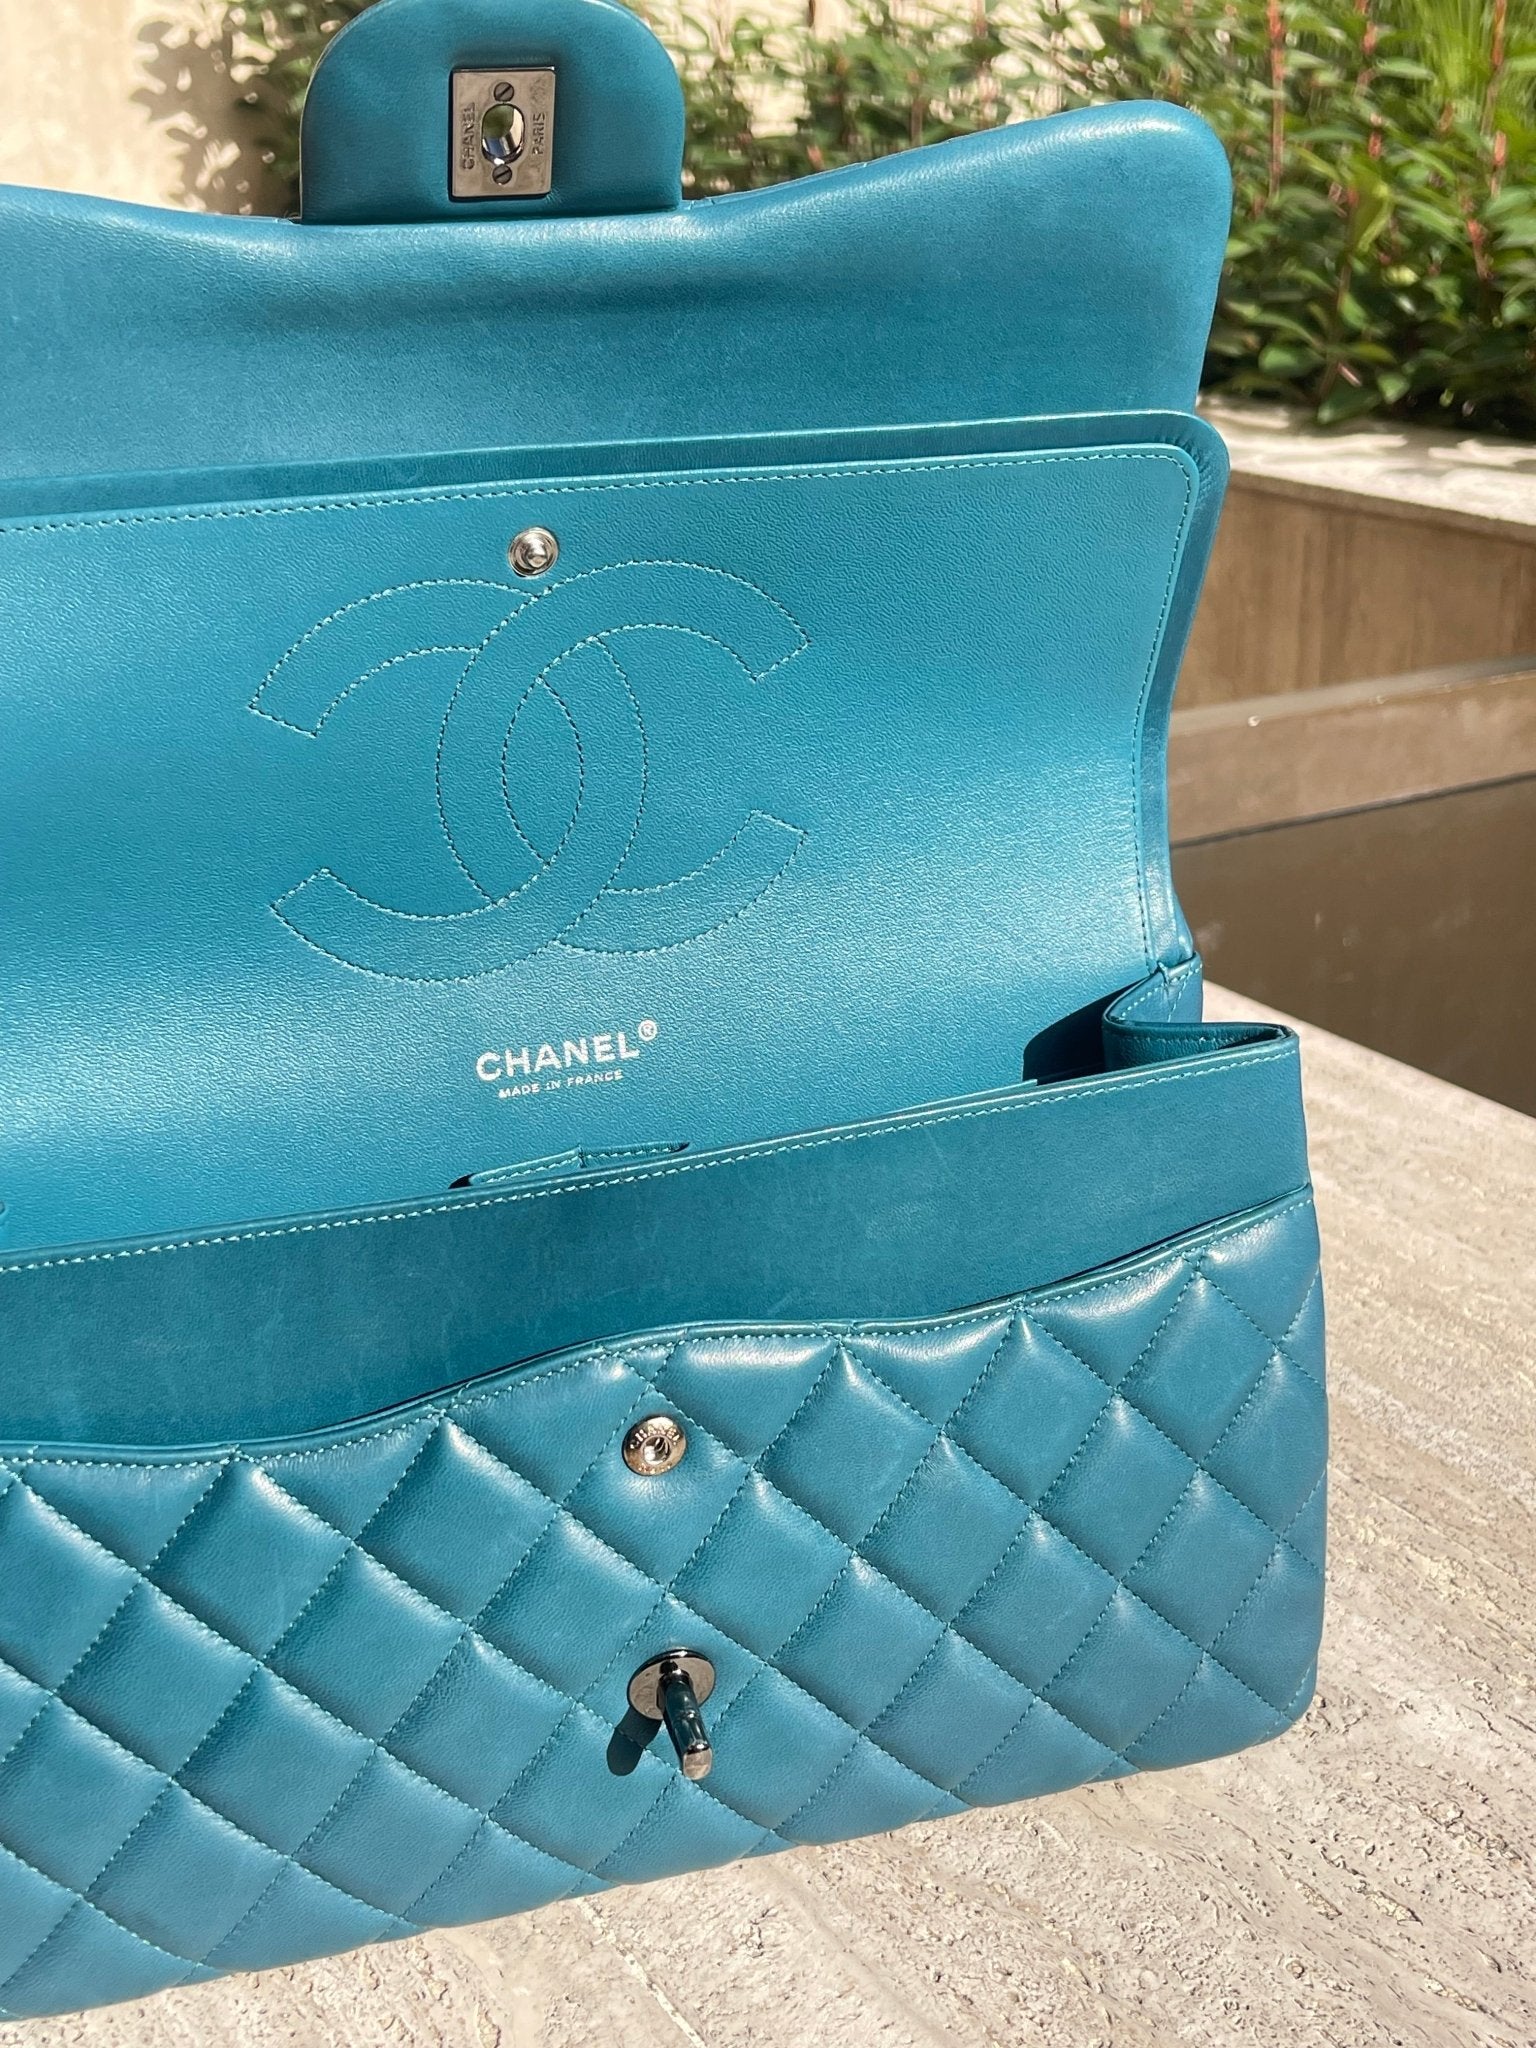 Chanel - Sac classique Jumbo bleu canard - Les Folies d&